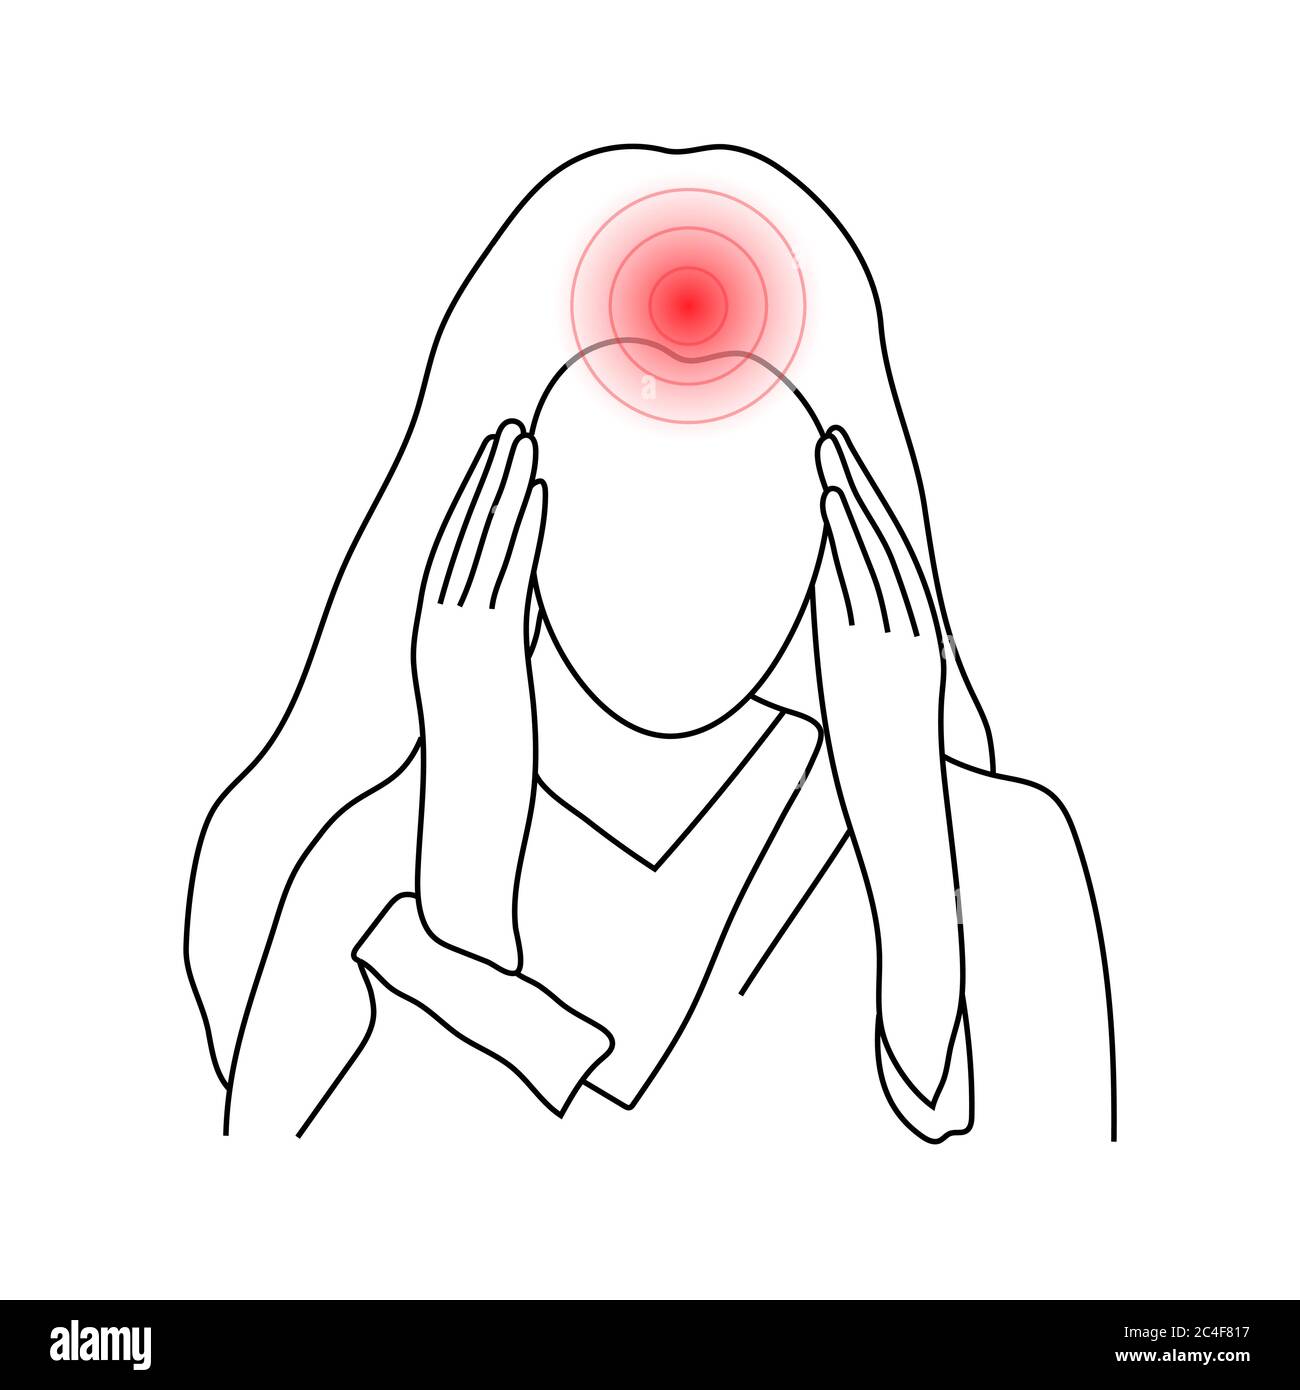 Croquis d'une jeune femme souffrant de maux de tête tenant la tête dans ses mains, isolée sur fond blanc. Illustration vectorielle. Illustration de Vecteur